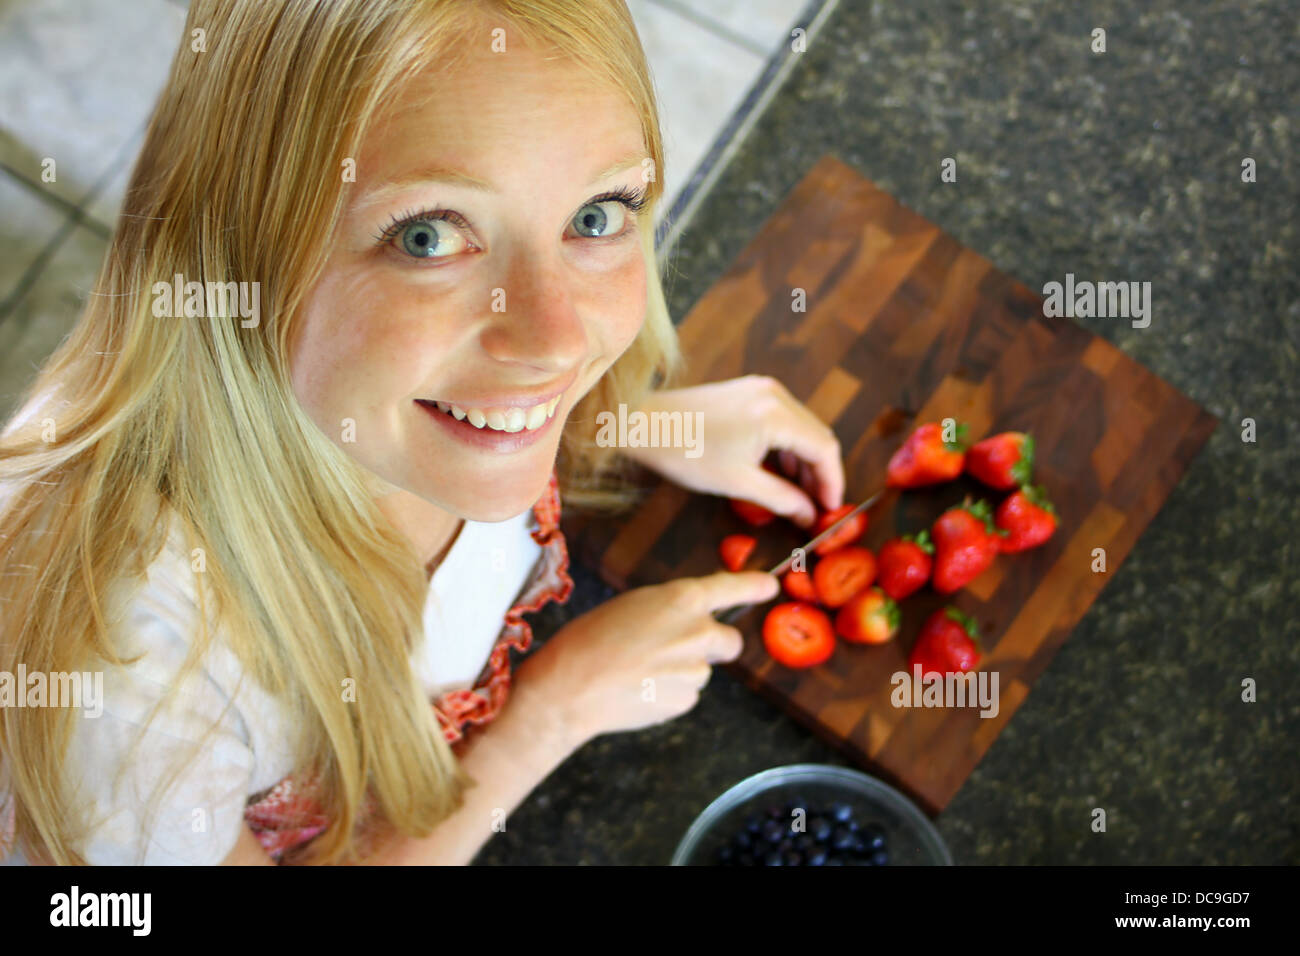 Une jolie femme est à la recherche jusqu'à l'appareil photo en souriant, alors qu'elle coupe les fraises. Banque D'Images